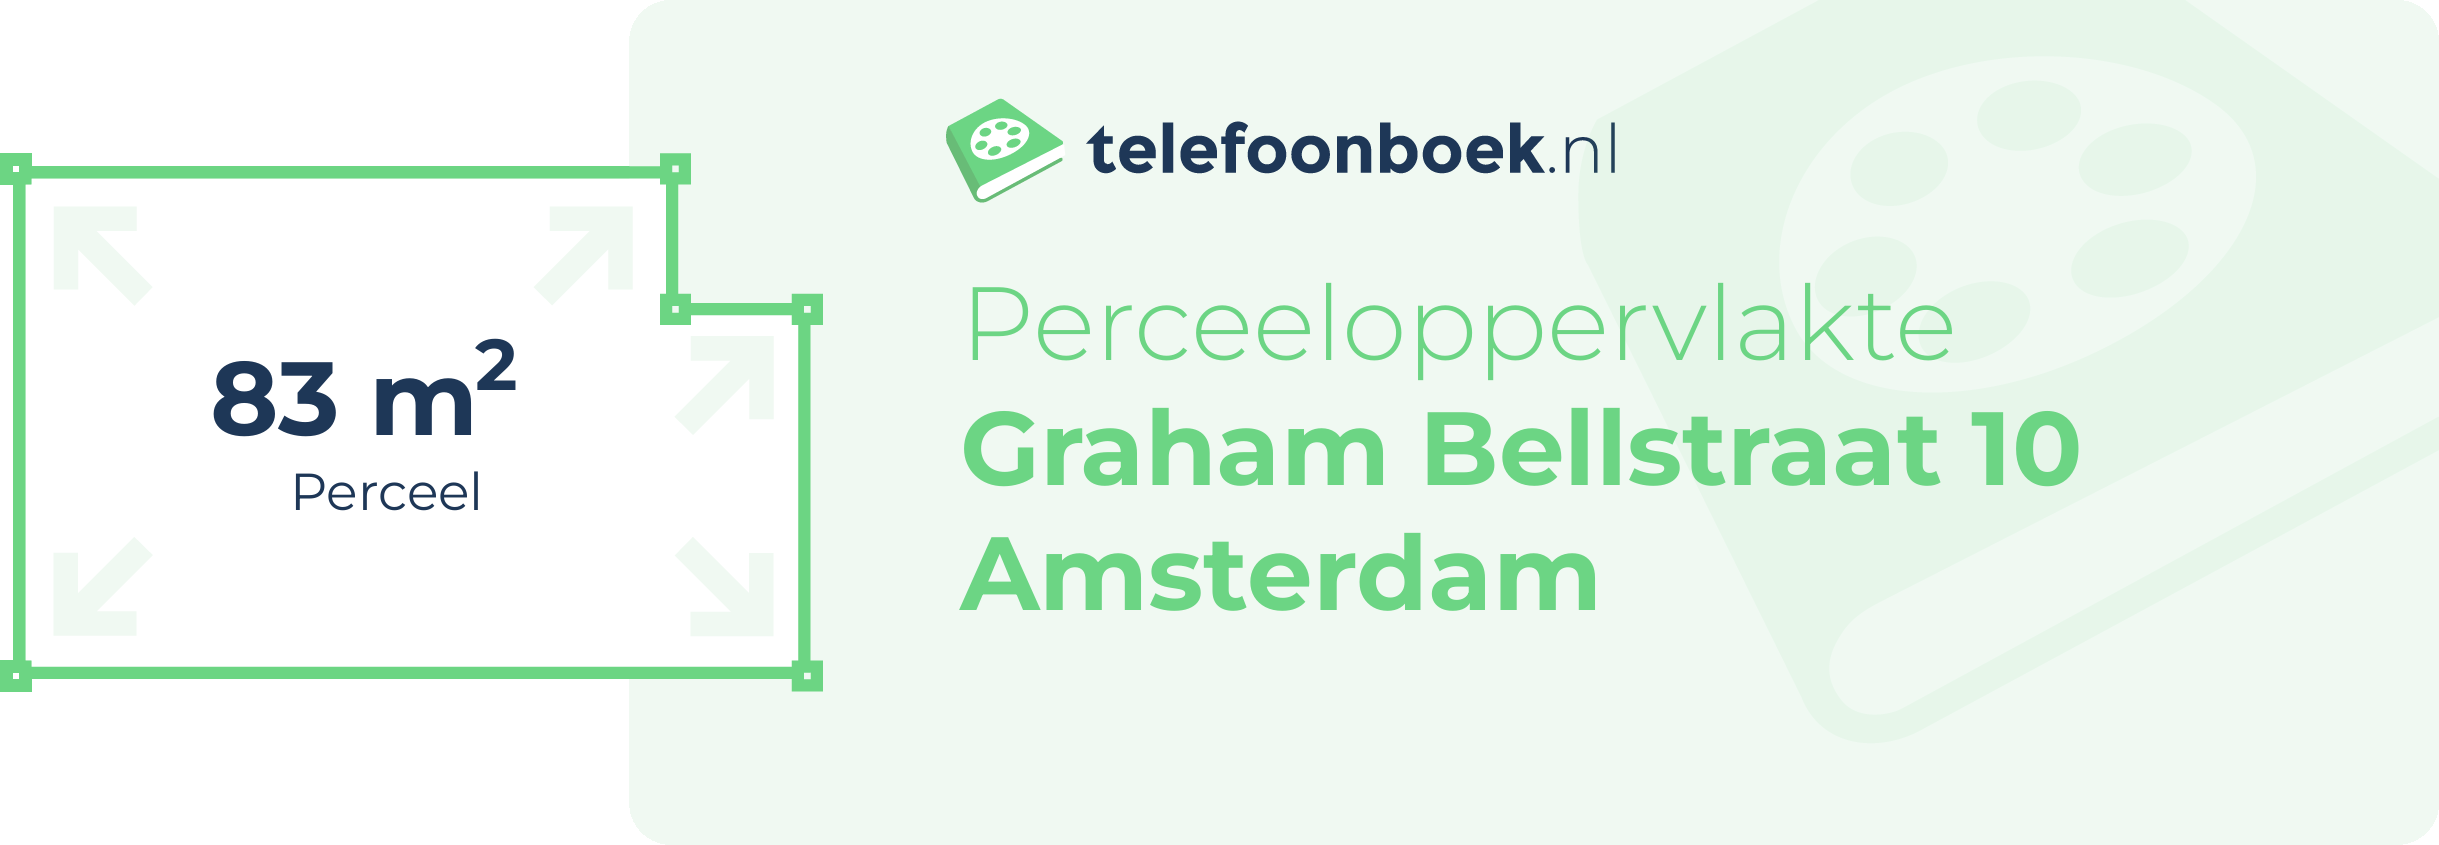 Perceeloppervlakte Graham Bellstraat 10 Amsterdam